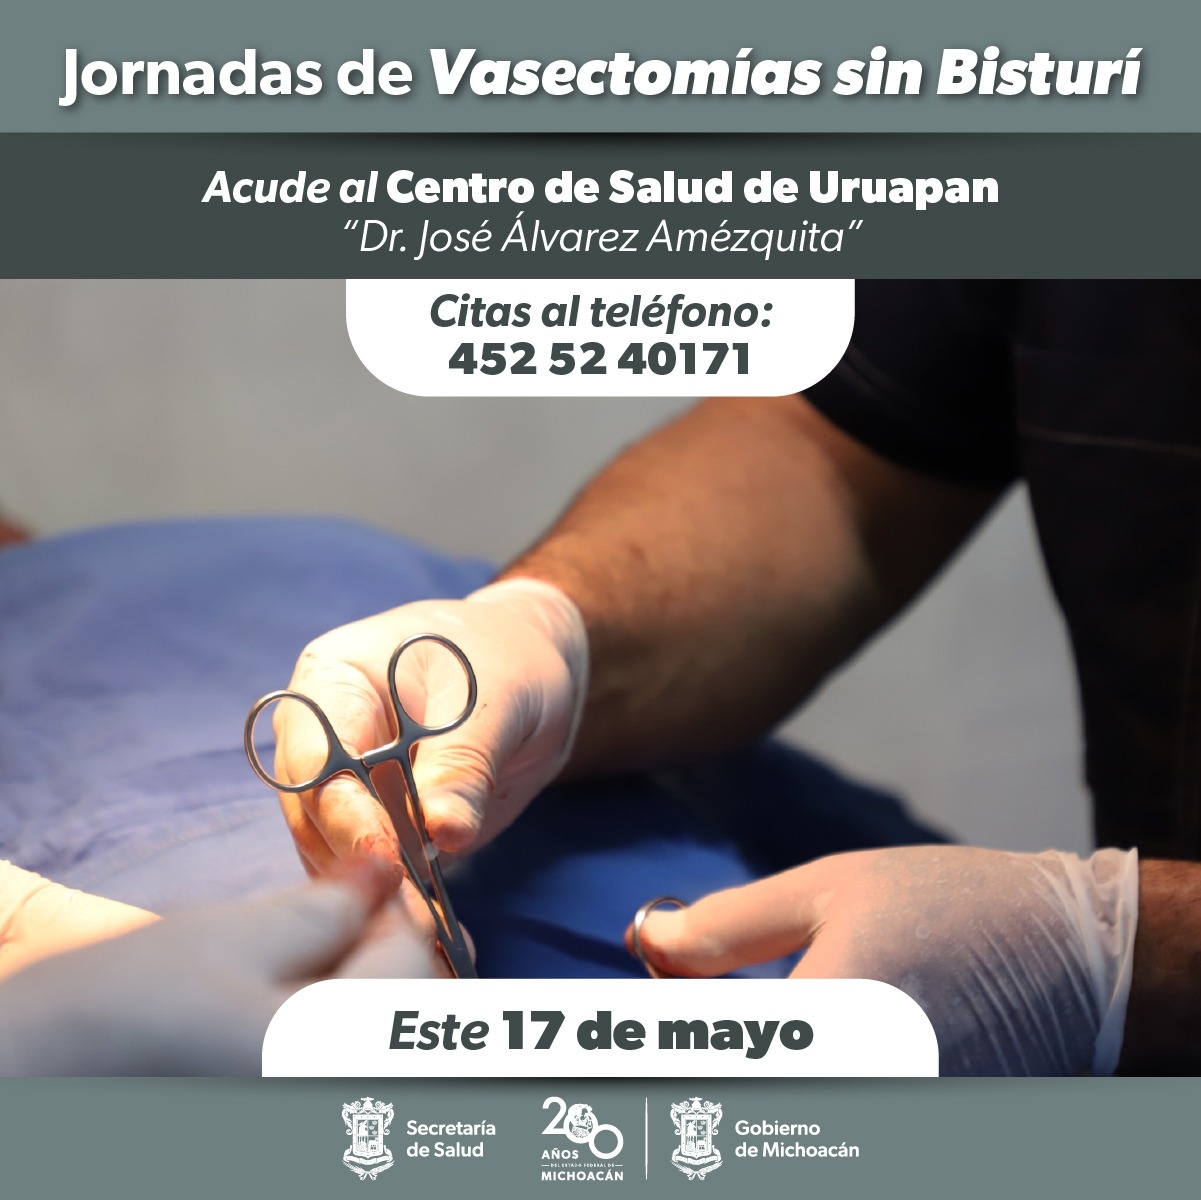 Este 17 de mayo Segunda jornada de vasectomía sin bisturí gratuita en Uruapan